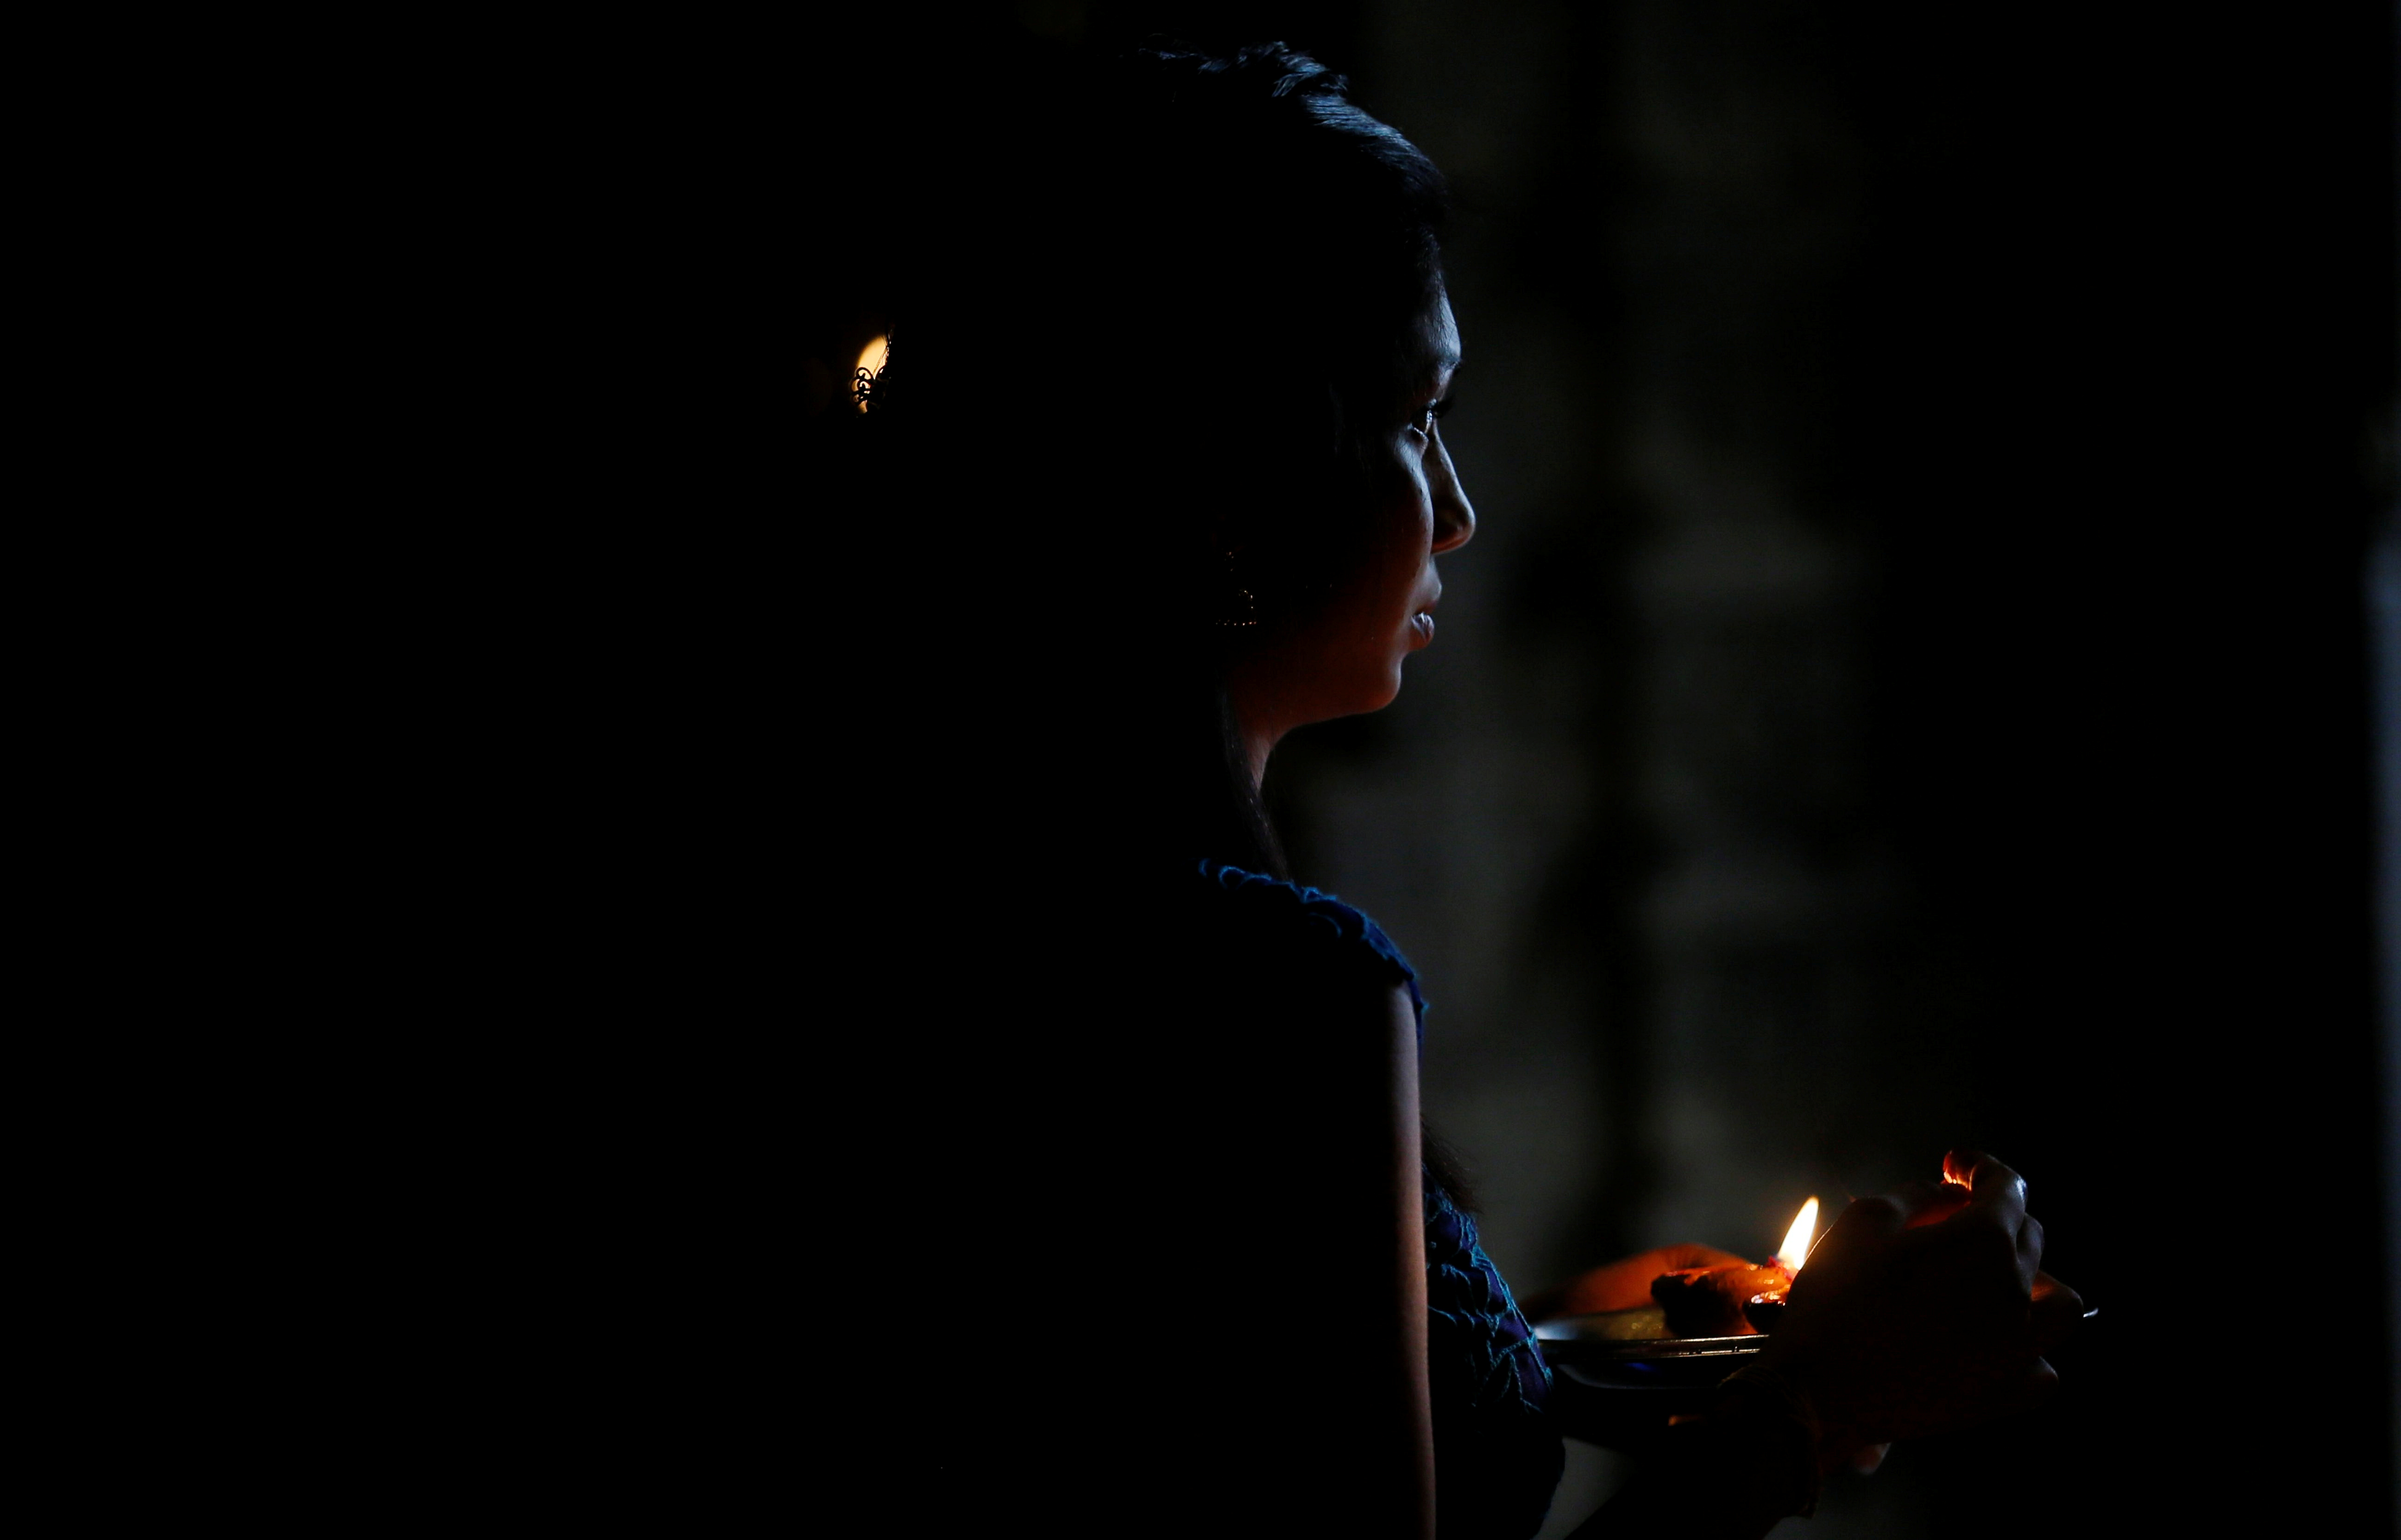 سيدة تشعل شمعة خلال الاحتفالات الدينية بالبونجال